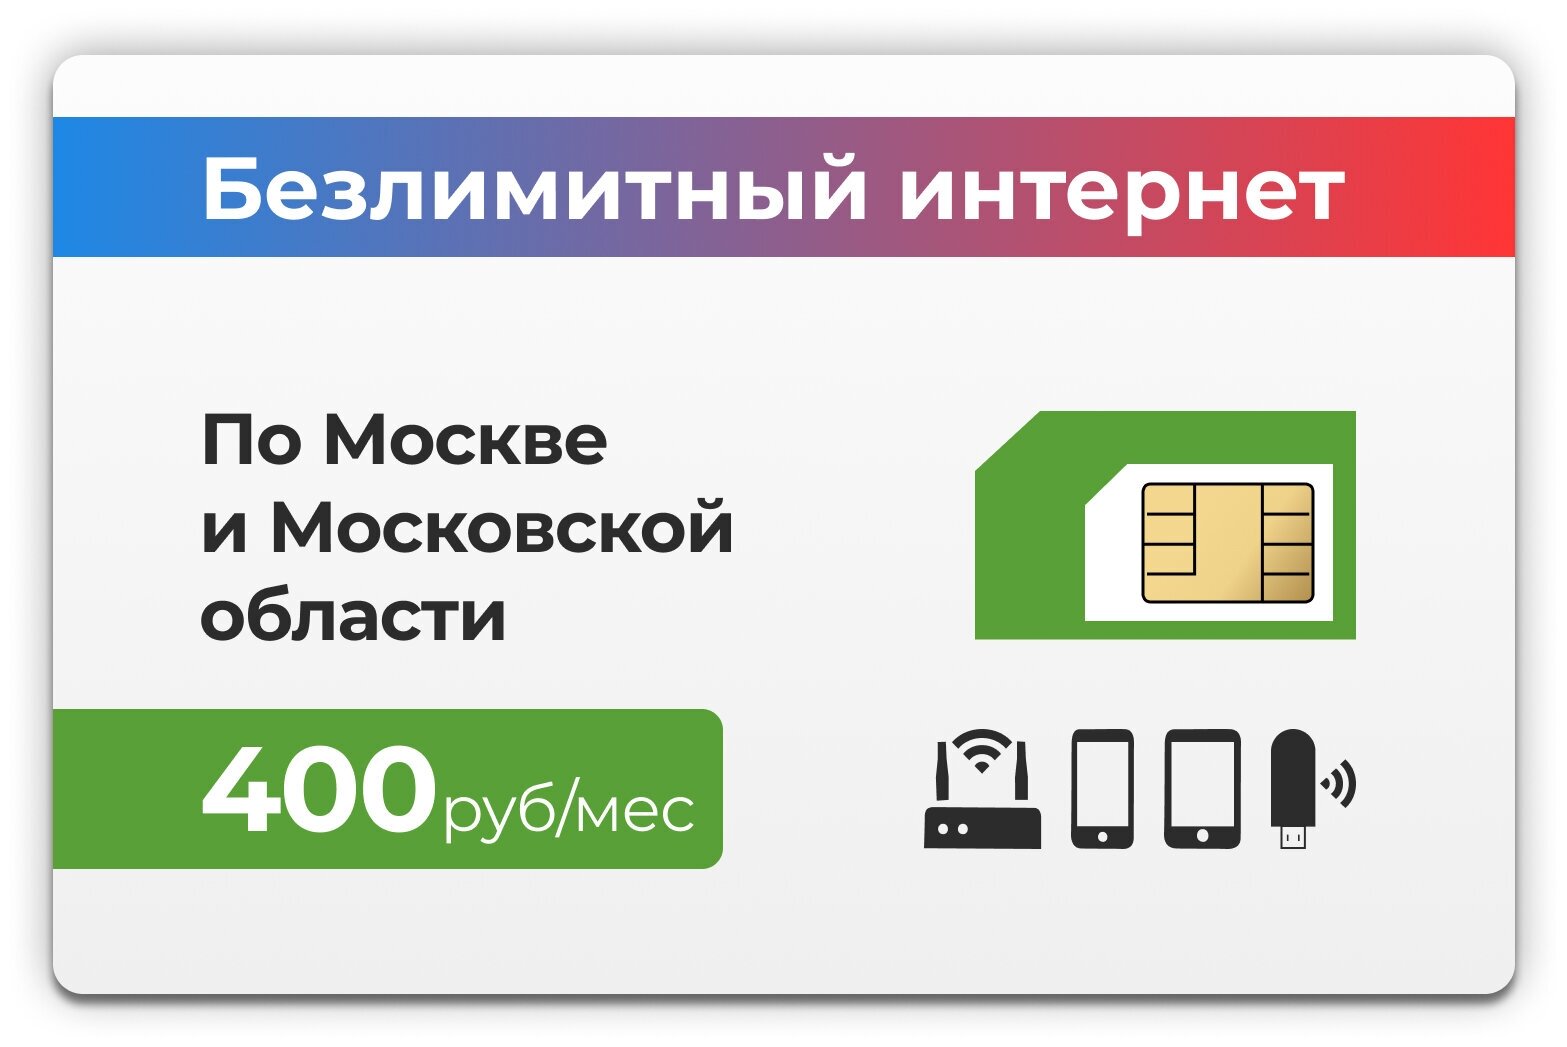 SIM-карта + тариф Безлимитный интернет 4G (Москва и Московская область) за 400 руб в месяц